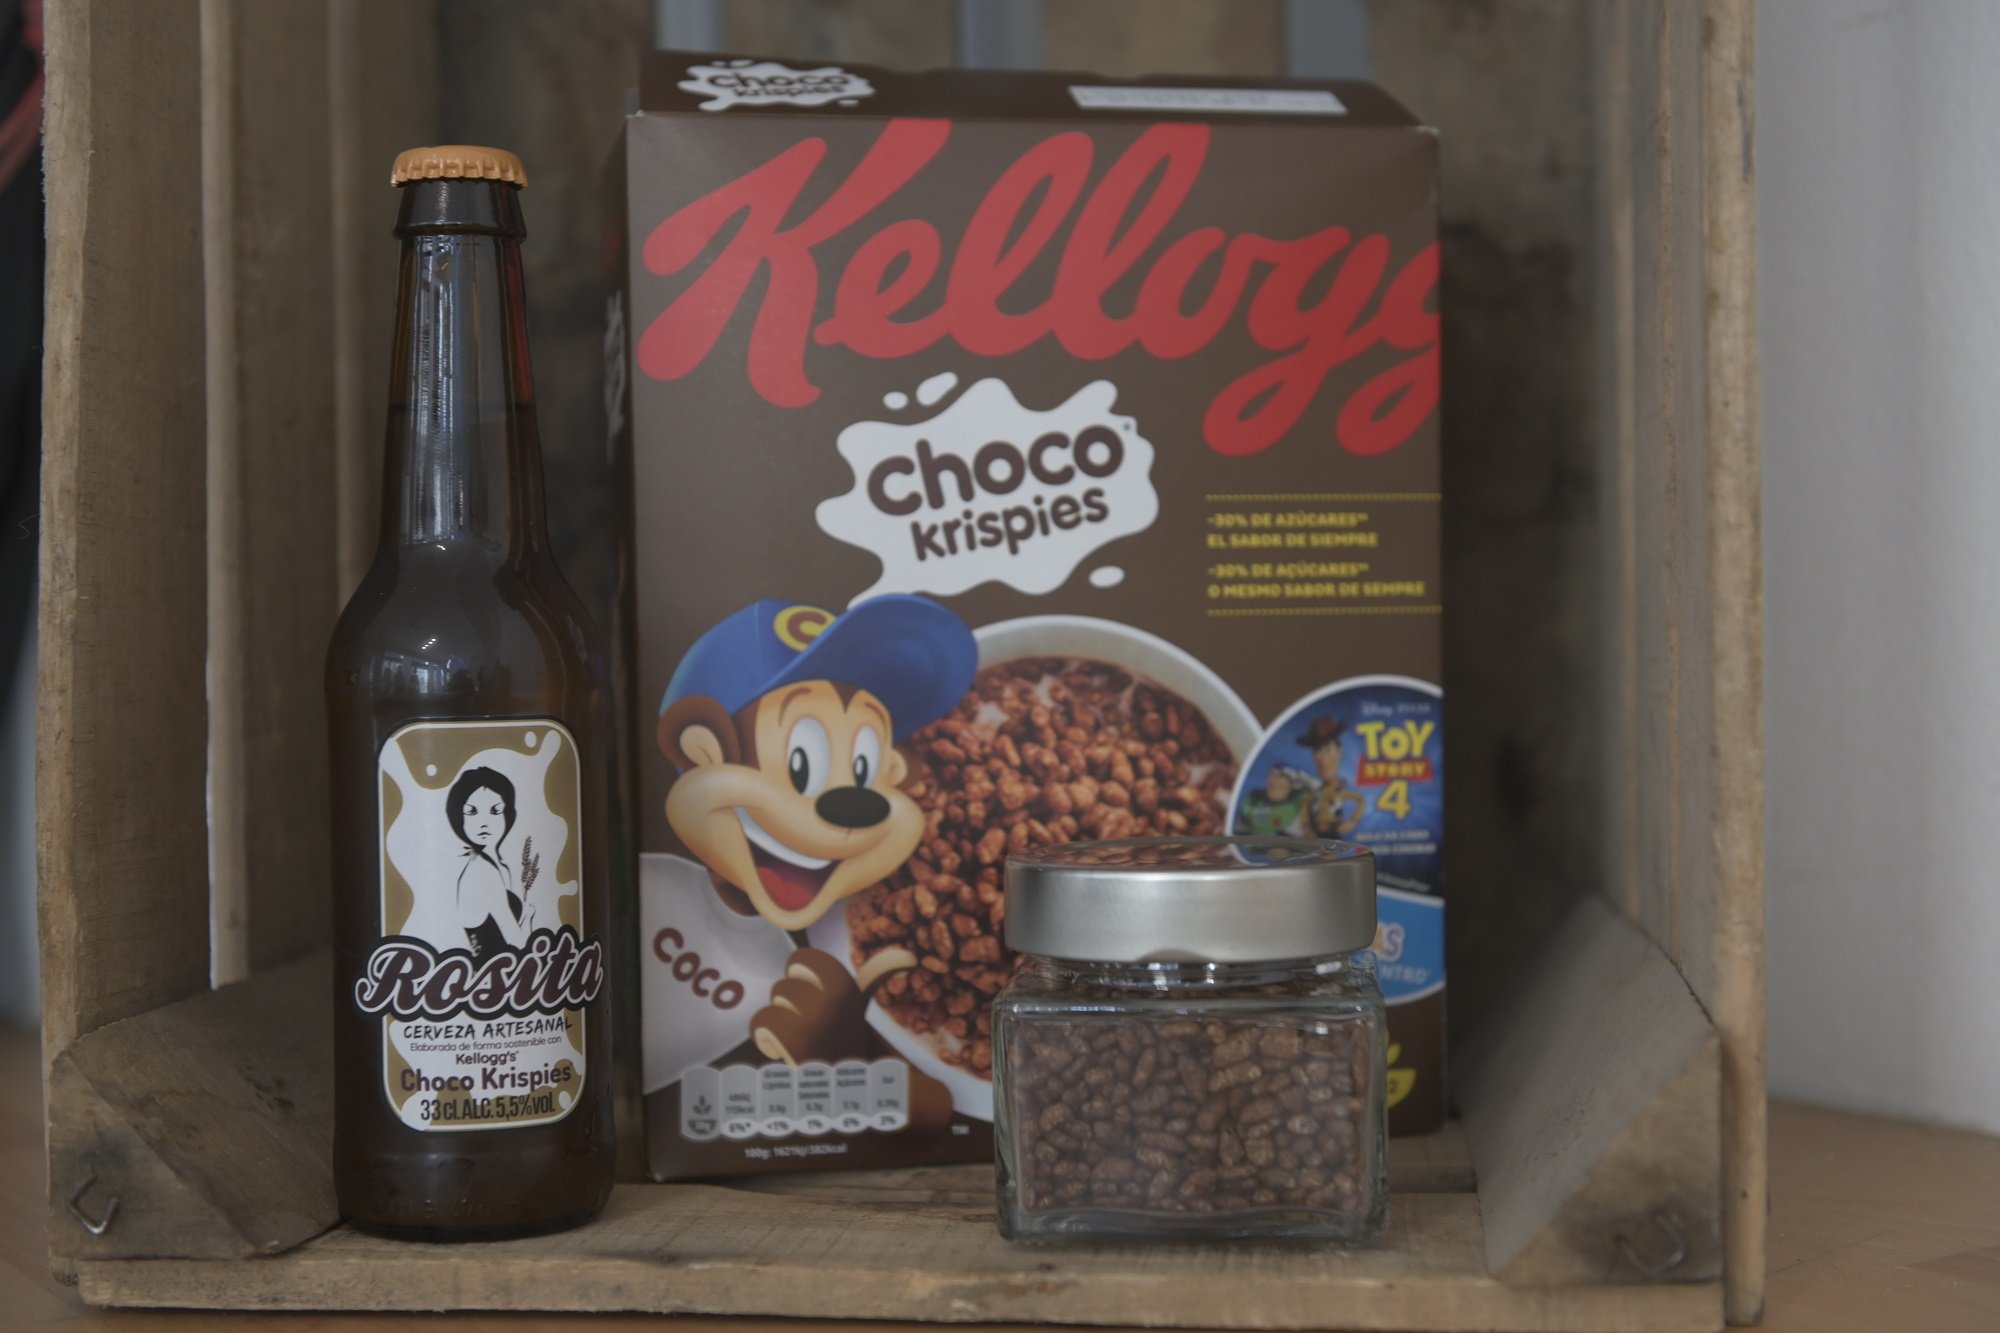 La última novetat de Kellogg's: cervesa artesana feta amb 'Choco Krispies'